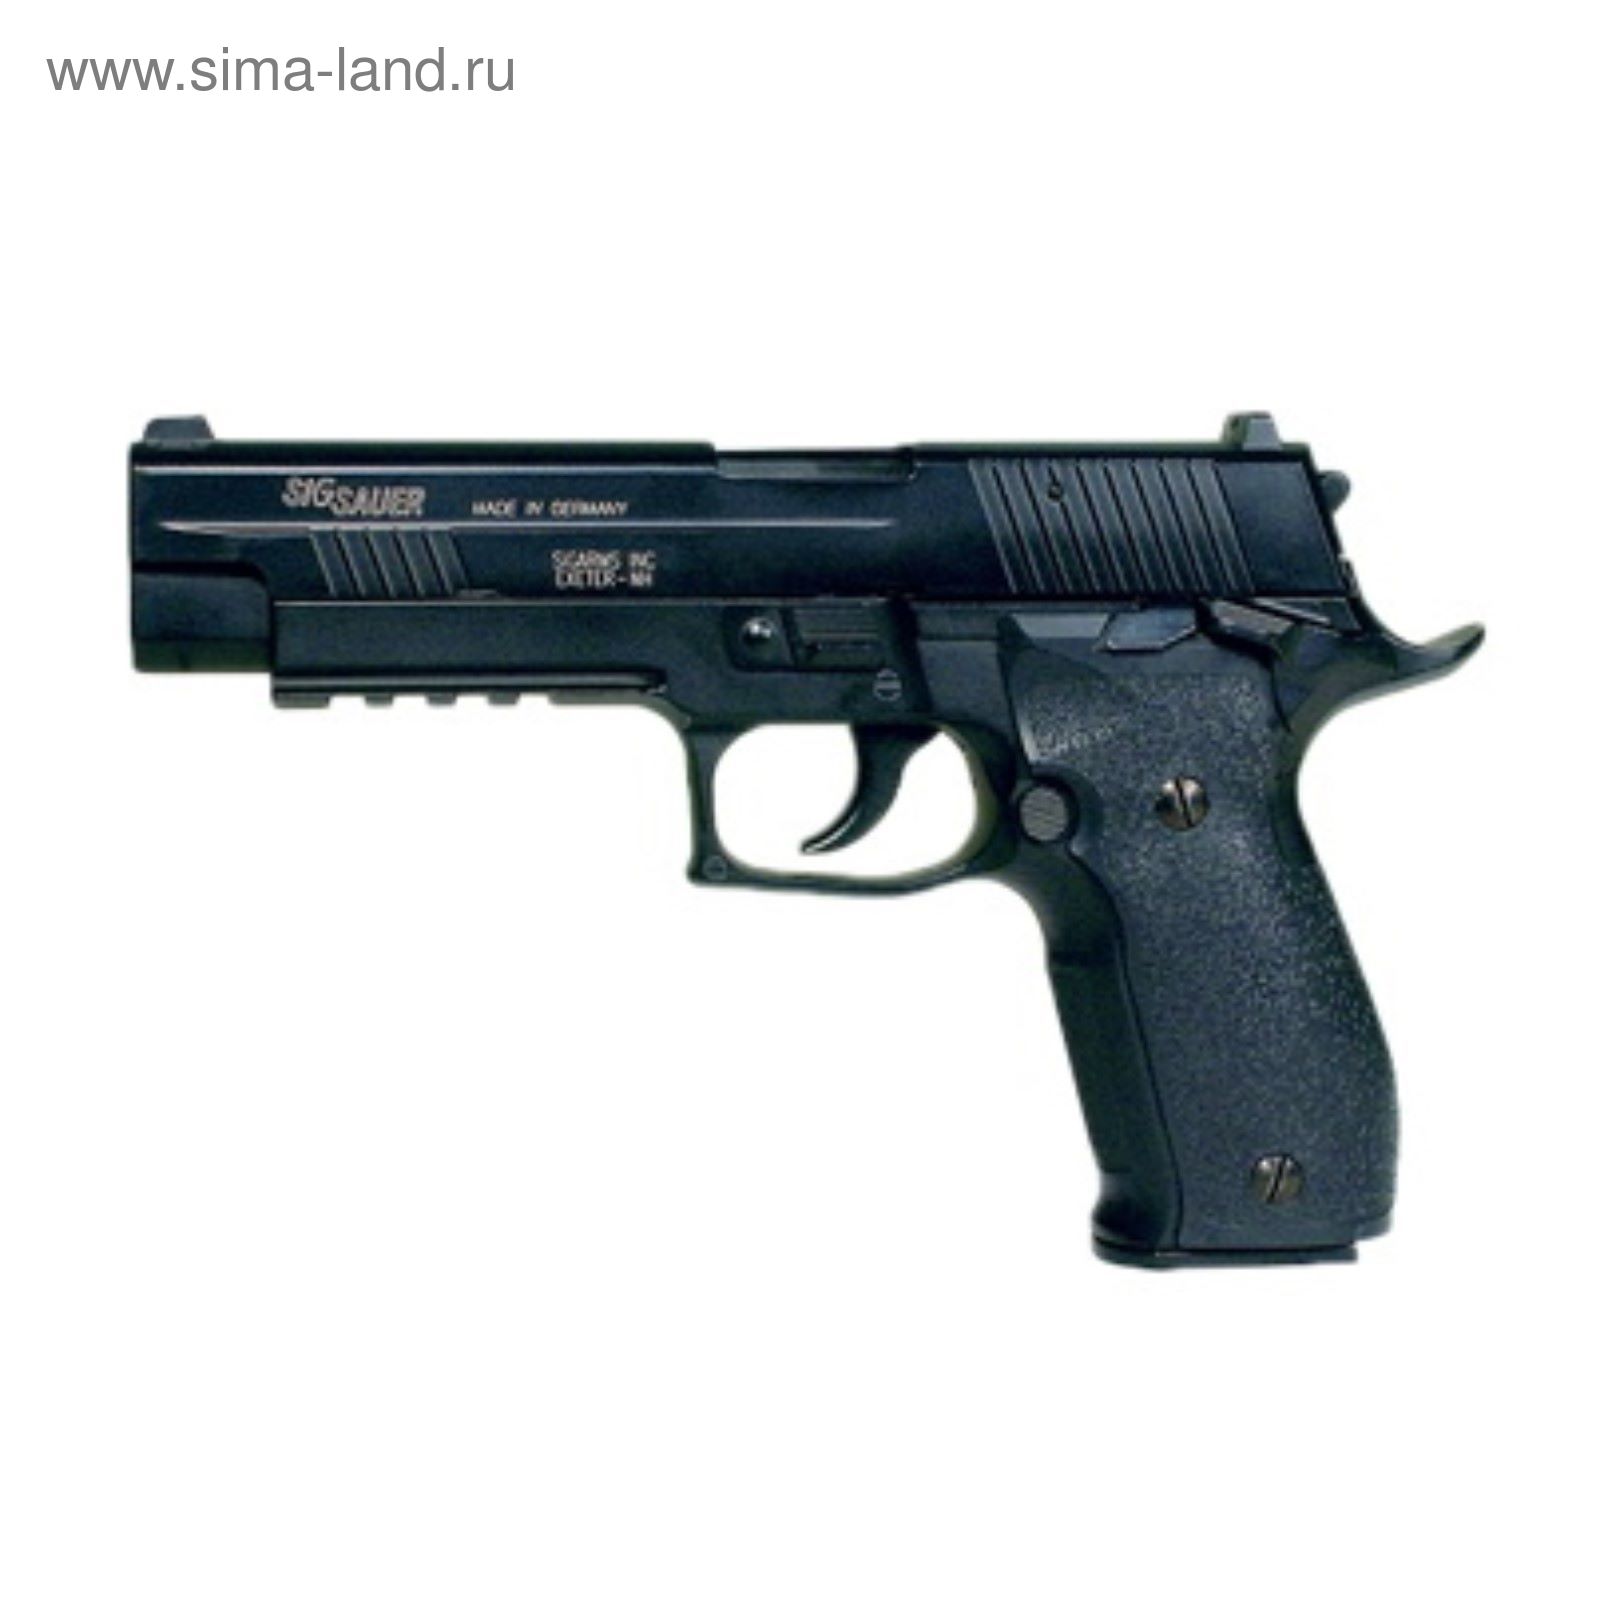 Пистолет пневматический Sig Sauer P226 X-Five, к.4,5 мм, металл, блоубэк, черный, 91 м/с